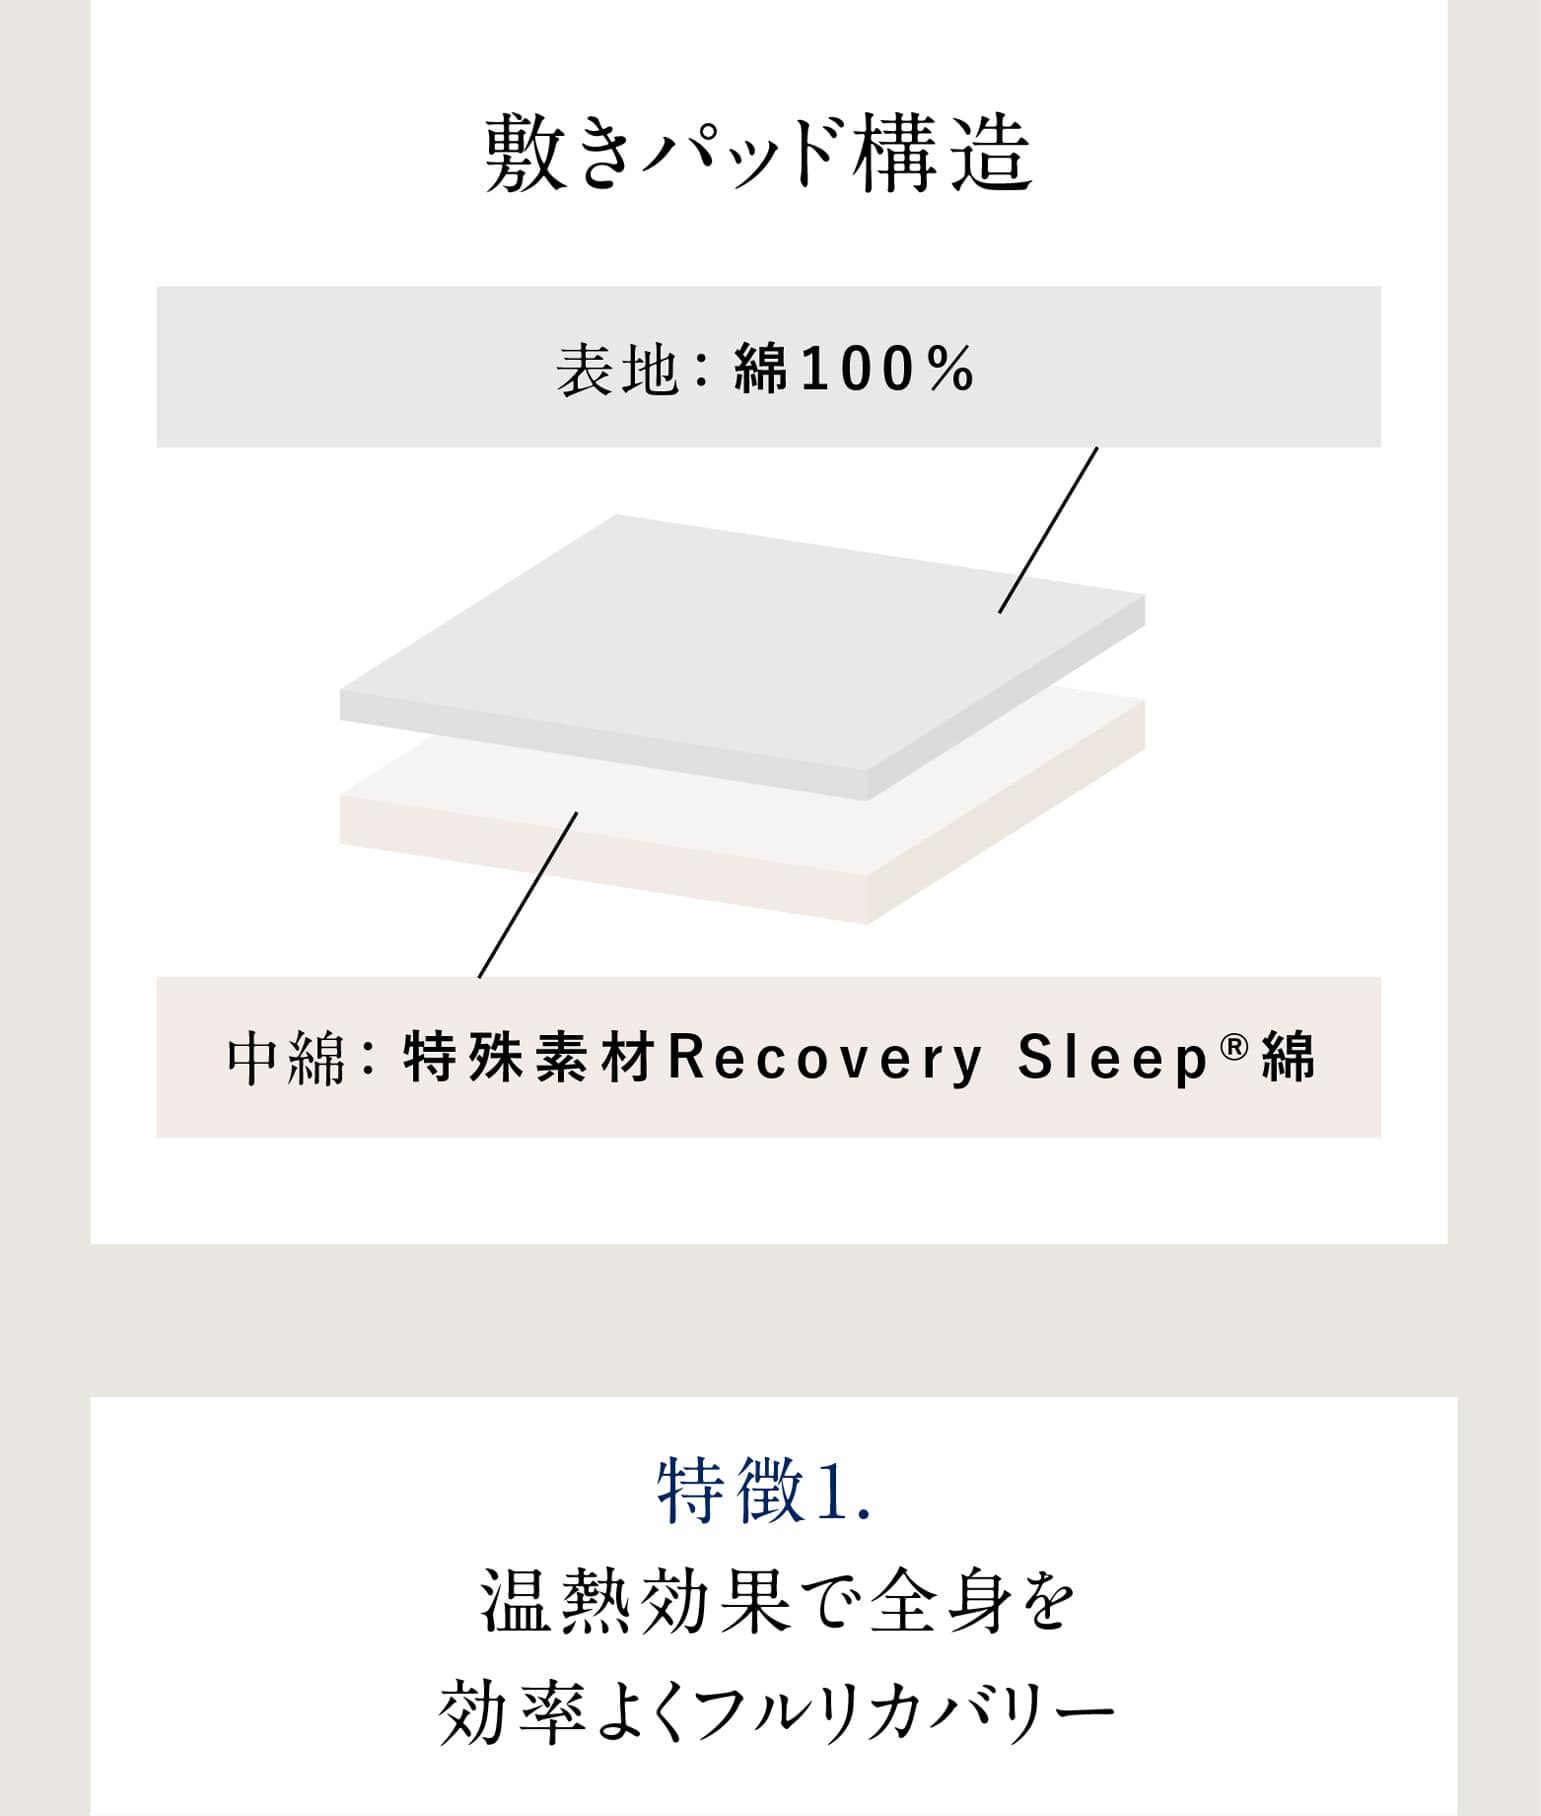 敷きパッド構造 表地：綿100％ 中綿：特殊素材Recovery Sleep®綿 特徴1. 温熱効果で全身を効率よくフルリカバリー 